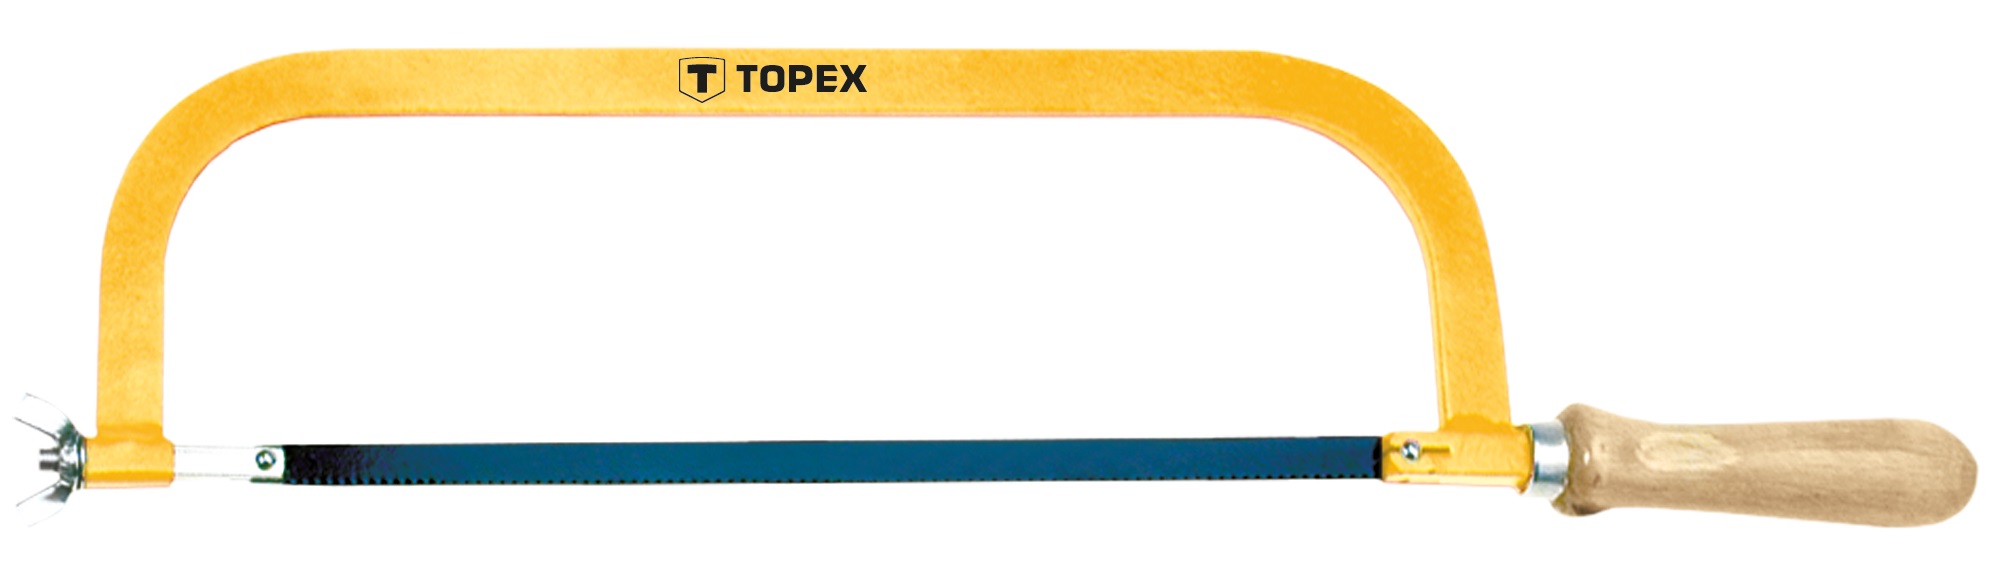 Отзывы ножовка по металлу Topex 10A130, 300 мм (10A130) в Украине